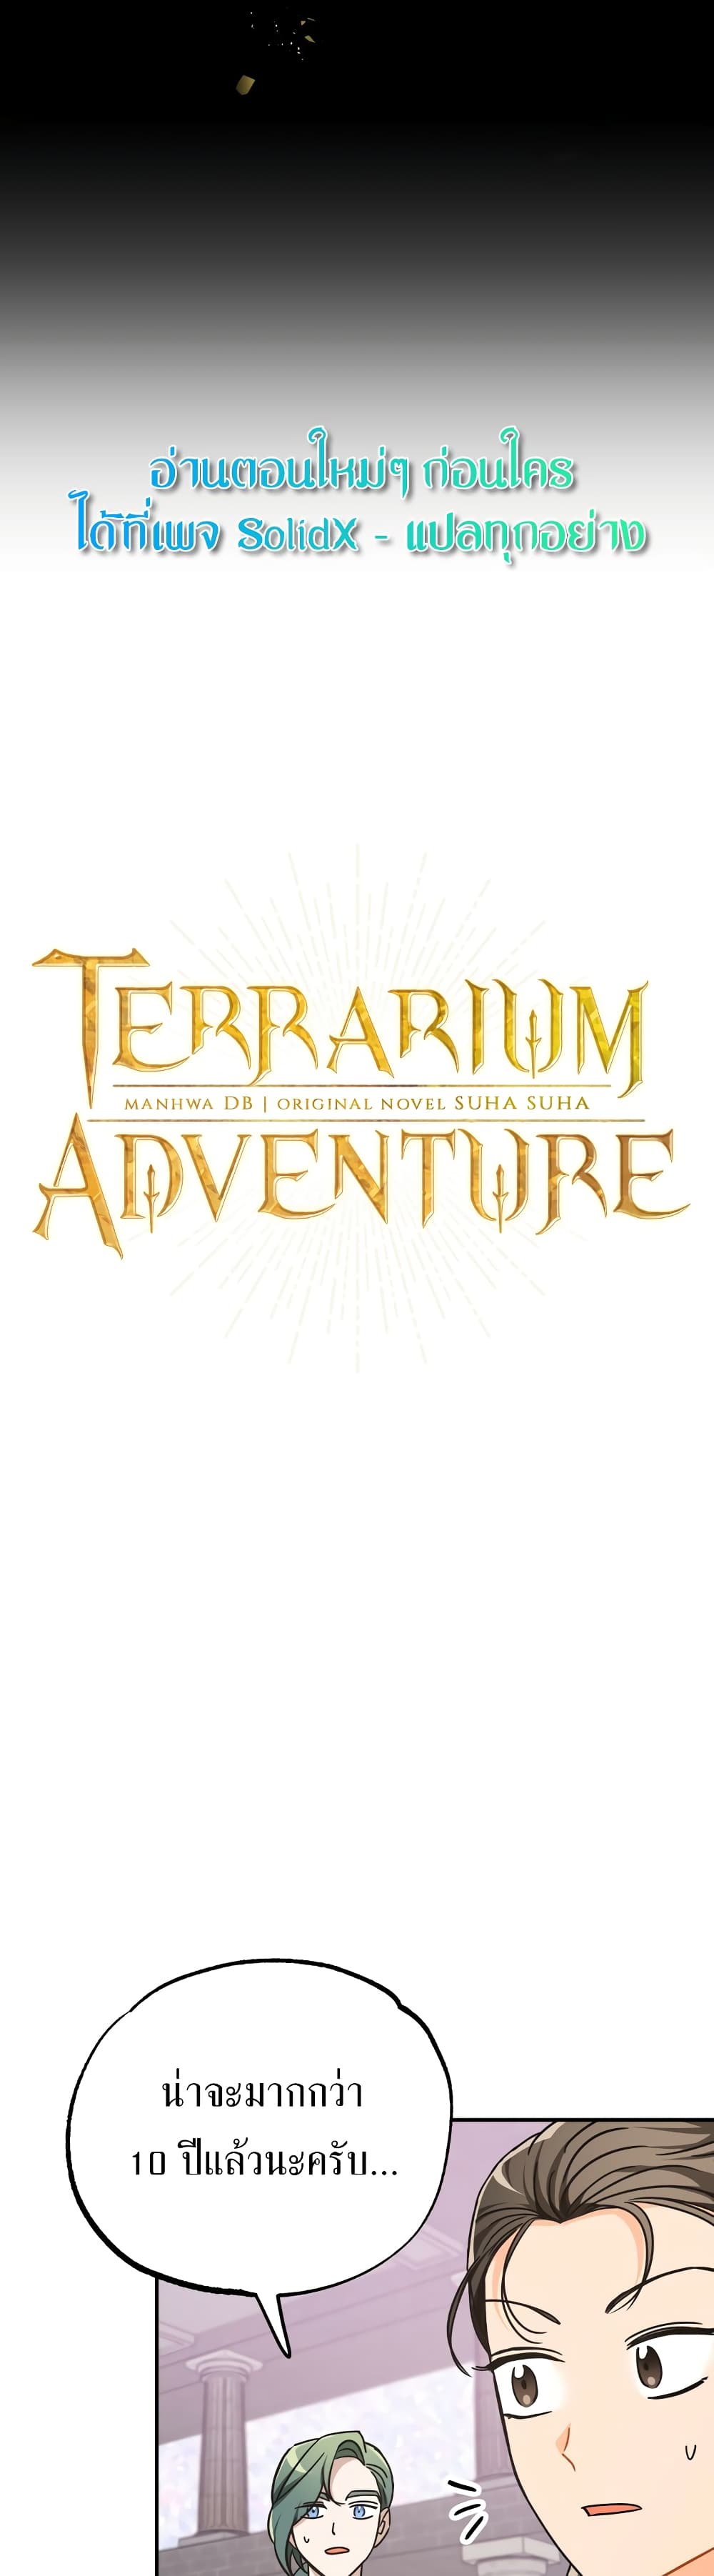 Terrarium Adventure 9 04